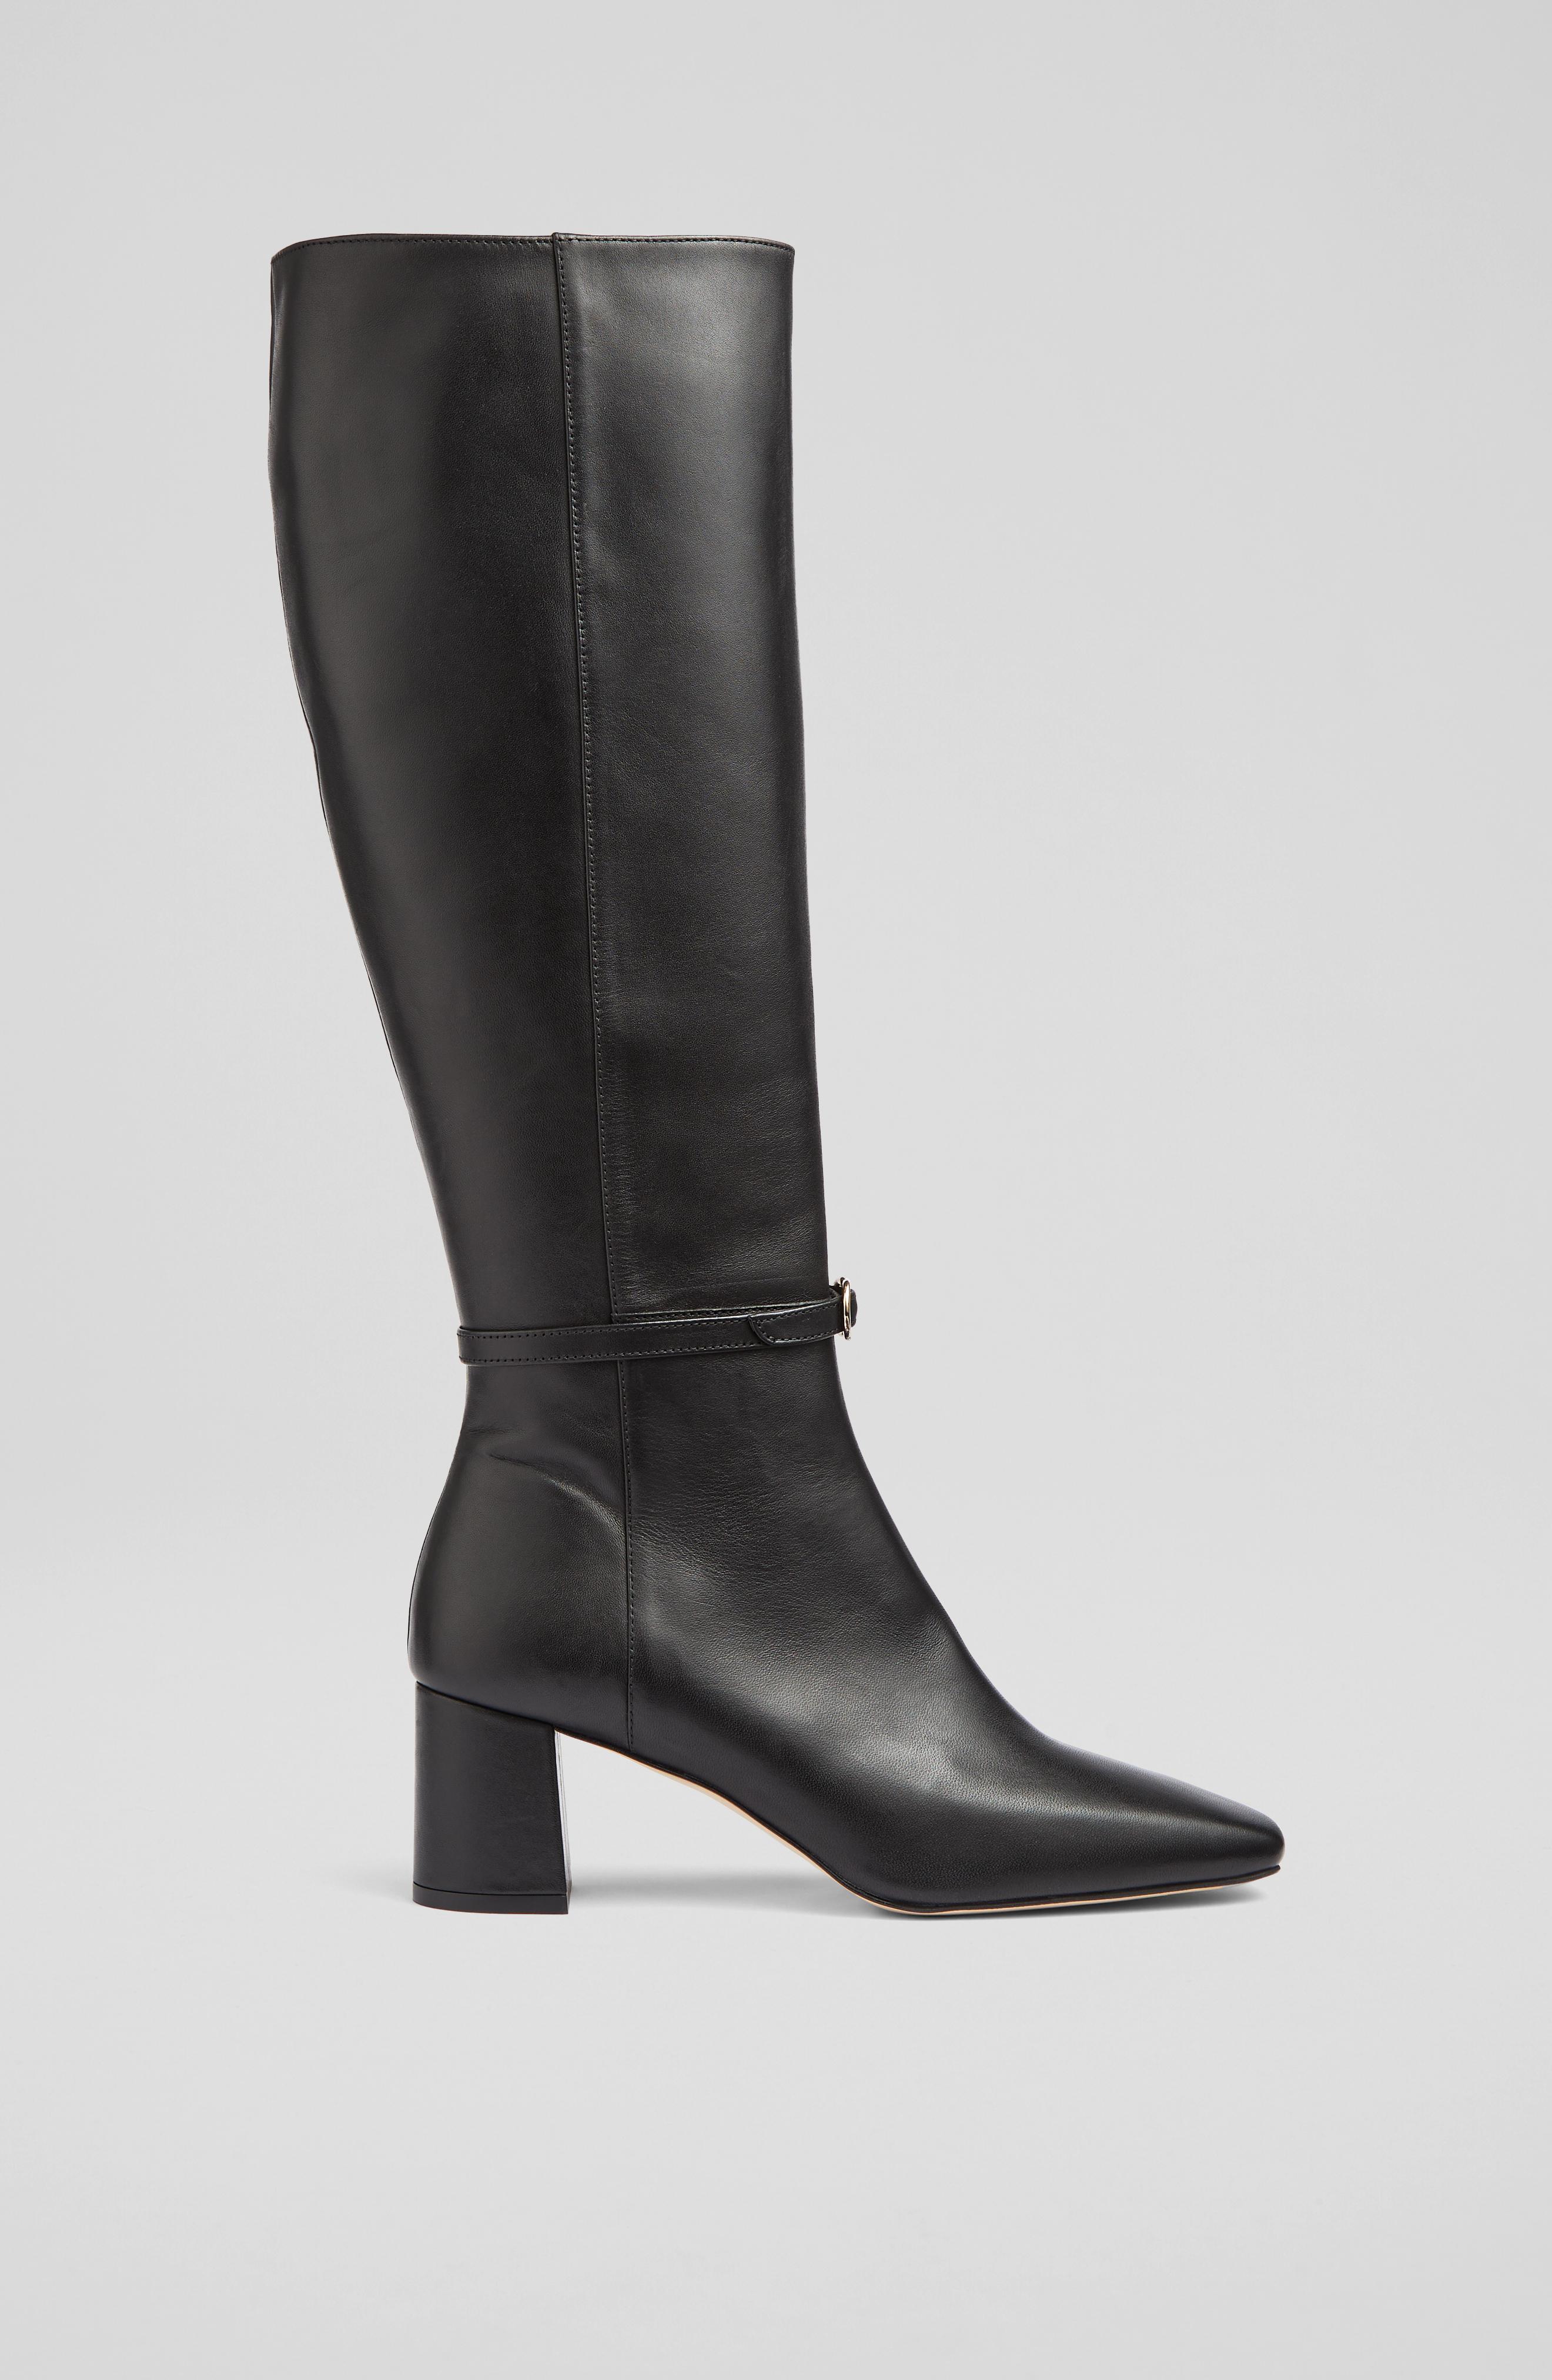 Best knee high boots: Shop women's knee high boots